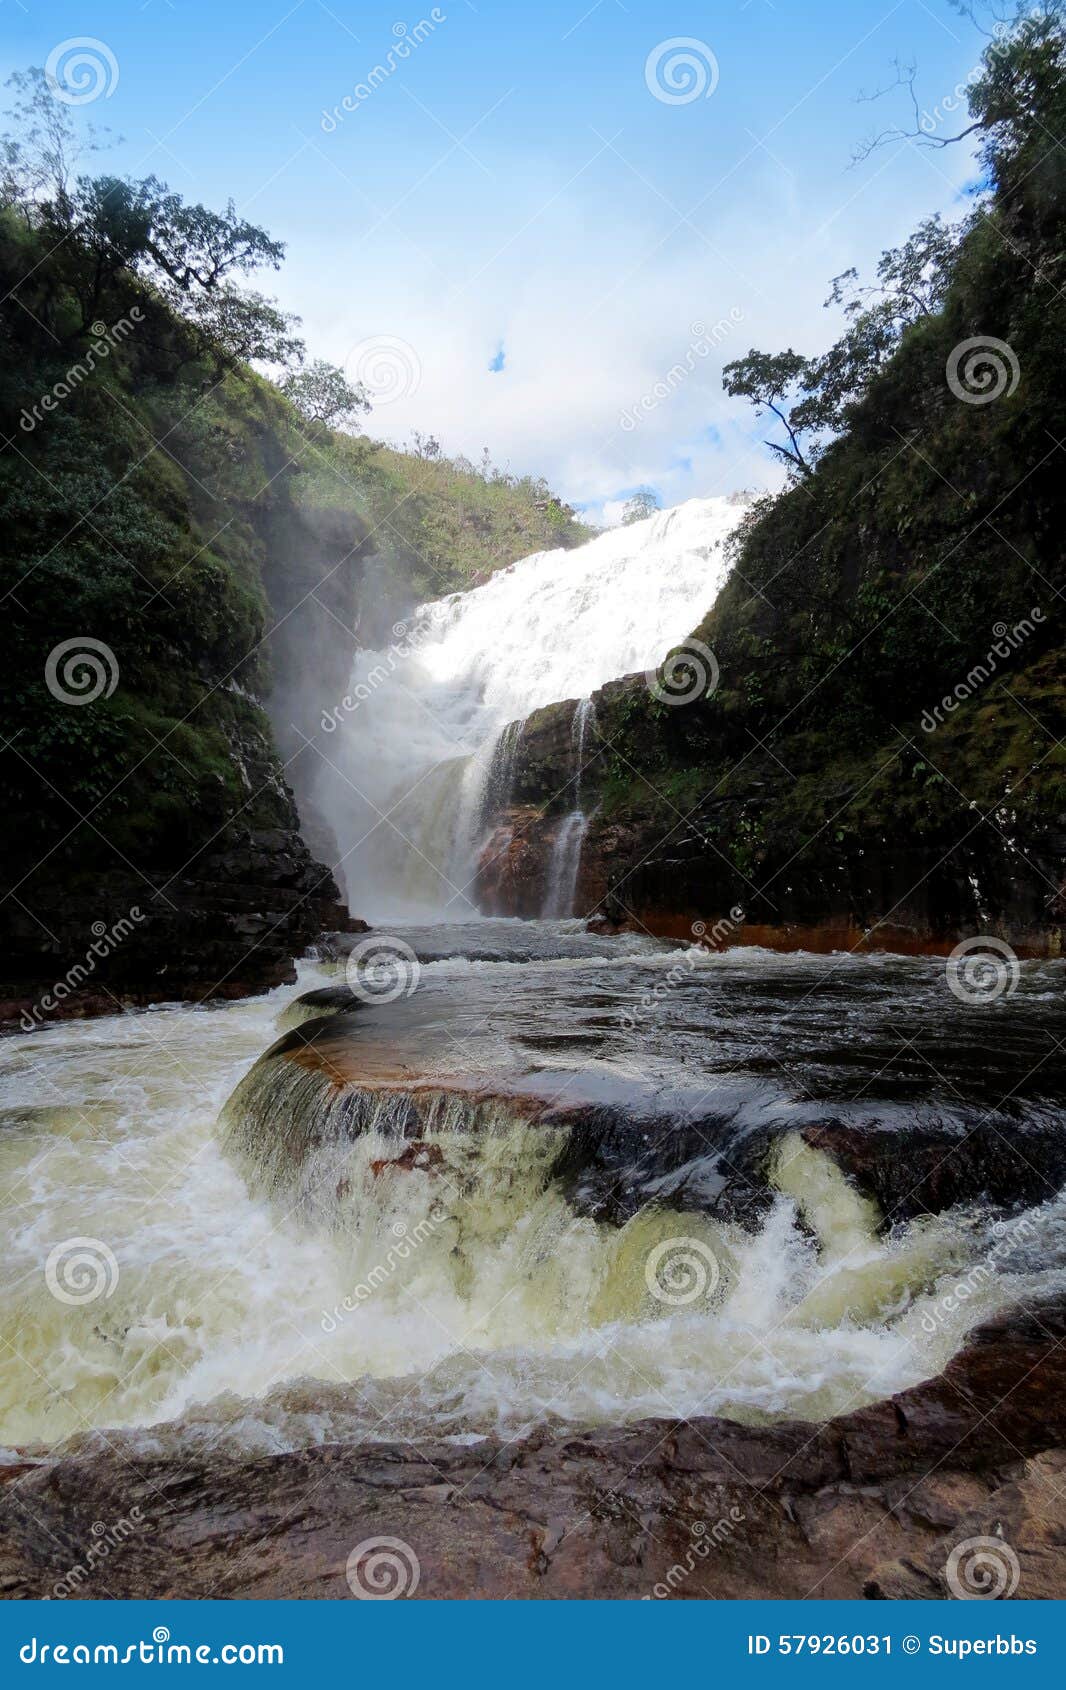 cachoeira dos couros, na chapada dos veadeiros - brasil